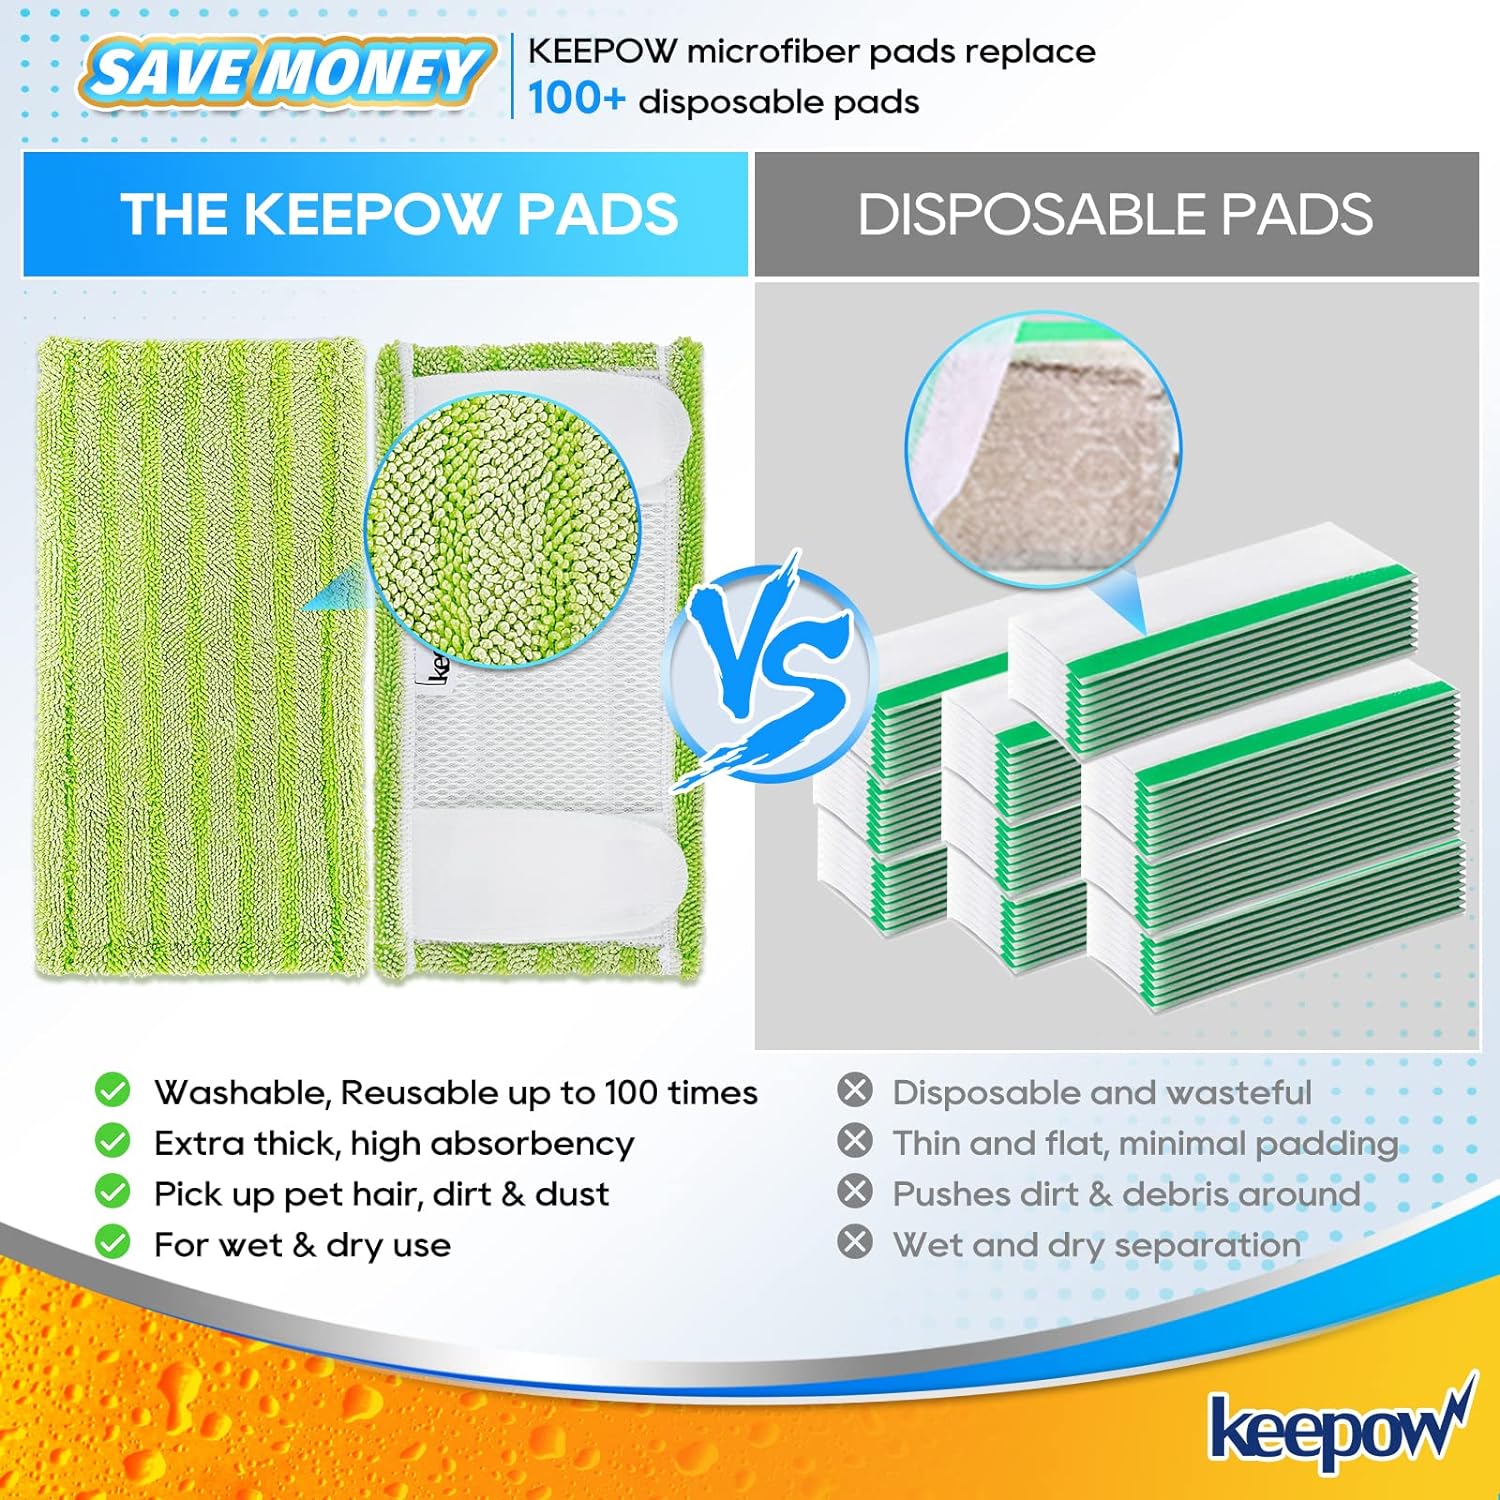 KEEPOW 5701M Juego de 6 paños de repuesto para mopa Swiffer Sweeper, microfibra sostenible para mopa de suelo, pulverizador, fregona limpiadora, lavable y reutilizable, color verde